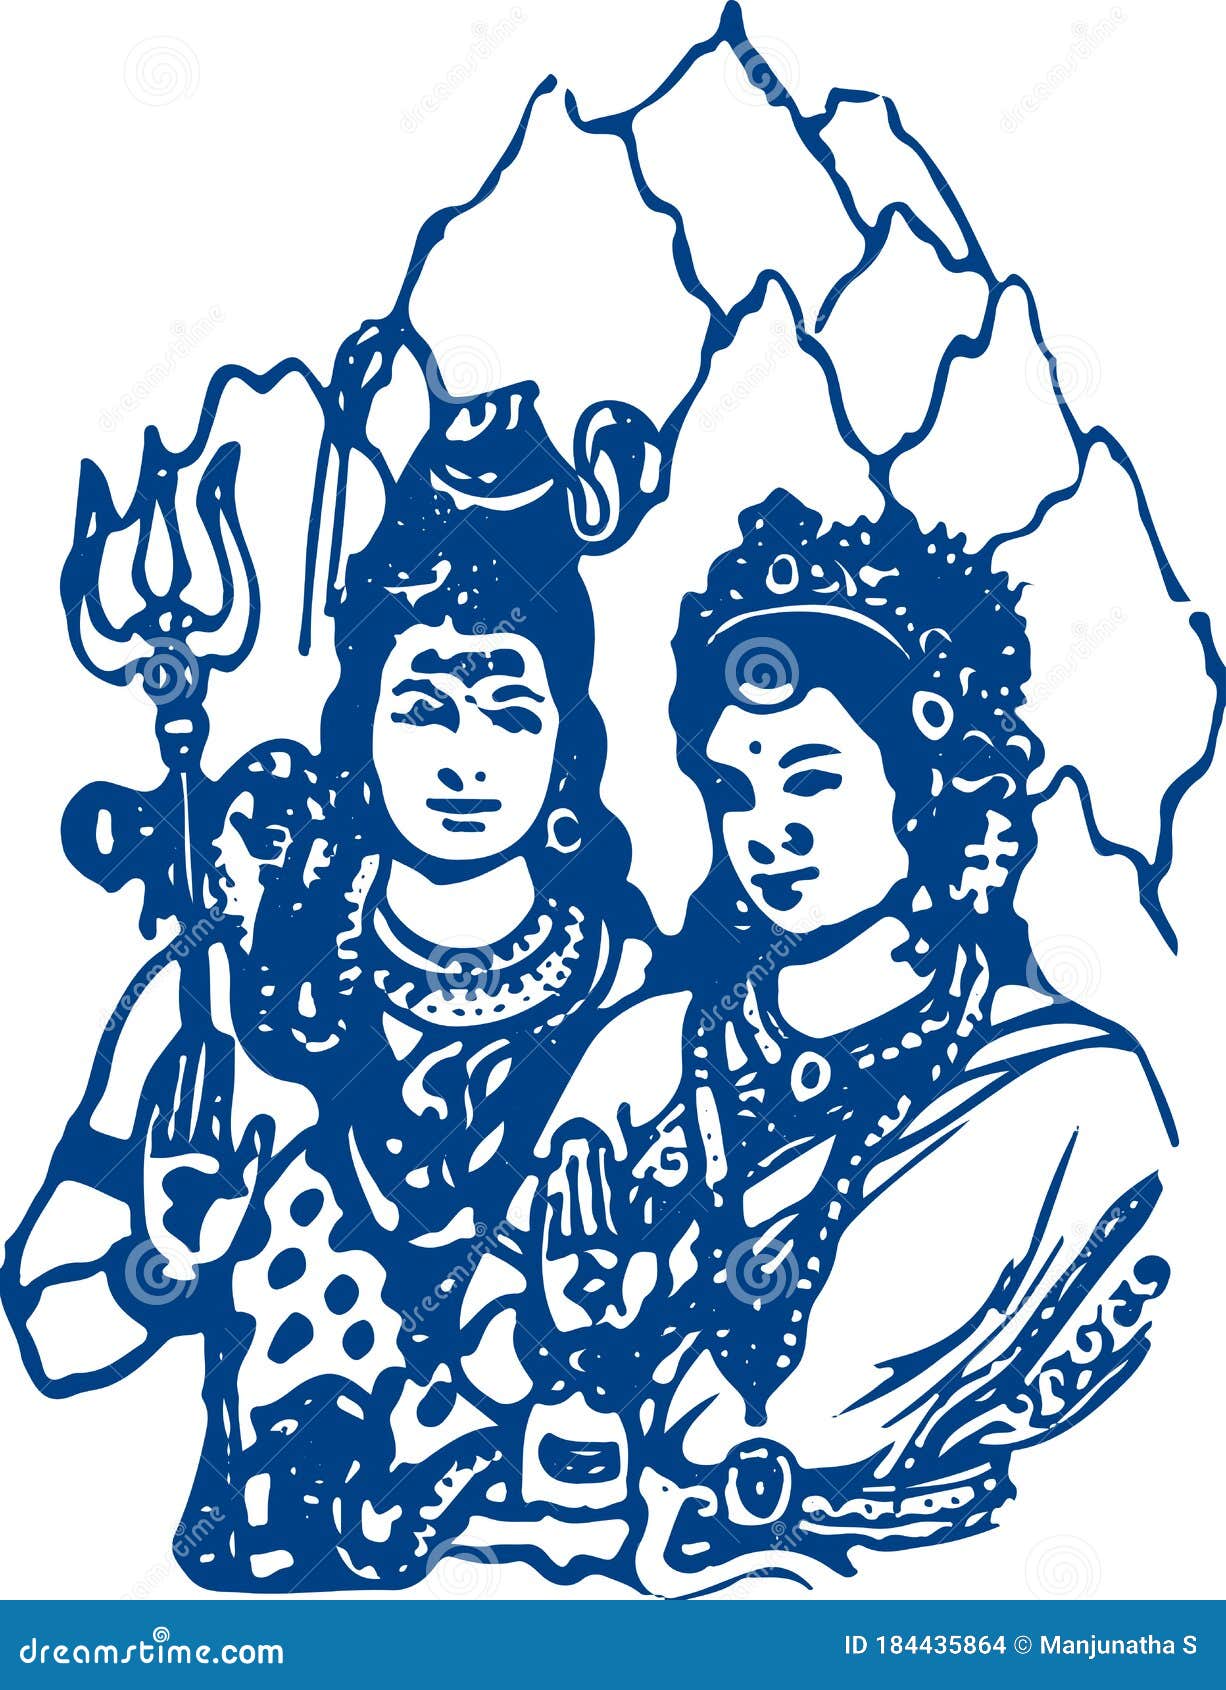 Ardhanarishvara Cartoons, Illustrations & Vector Stock Images - 12